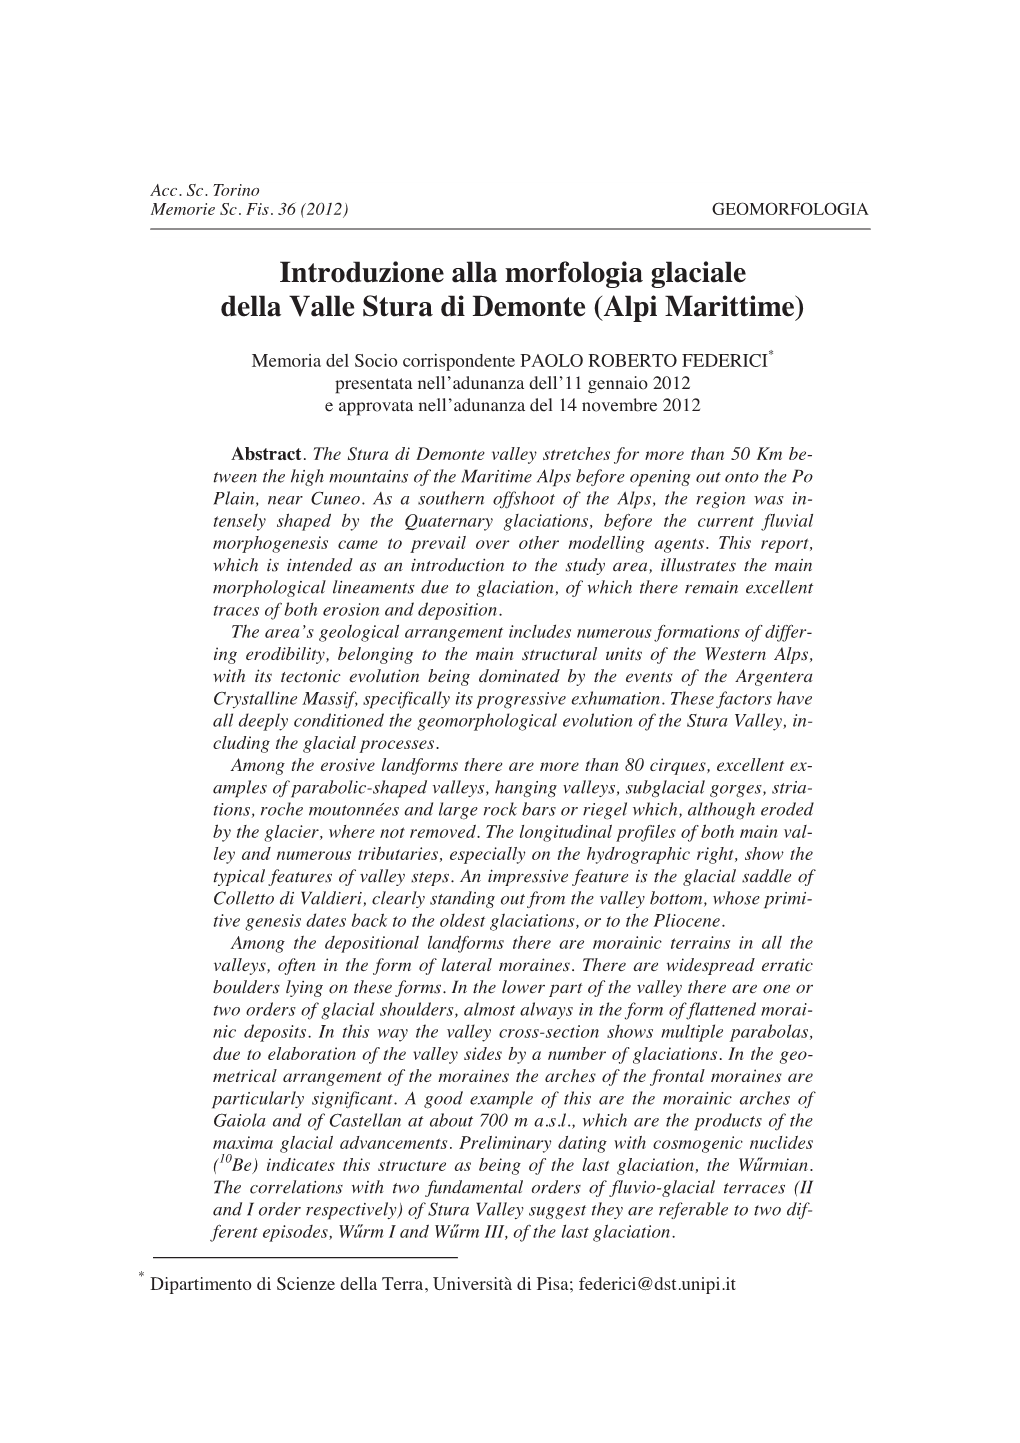 Introduzione Alla Morfologia Glaciale Della Valle Stura Di Demonte (Alpi Marittime)